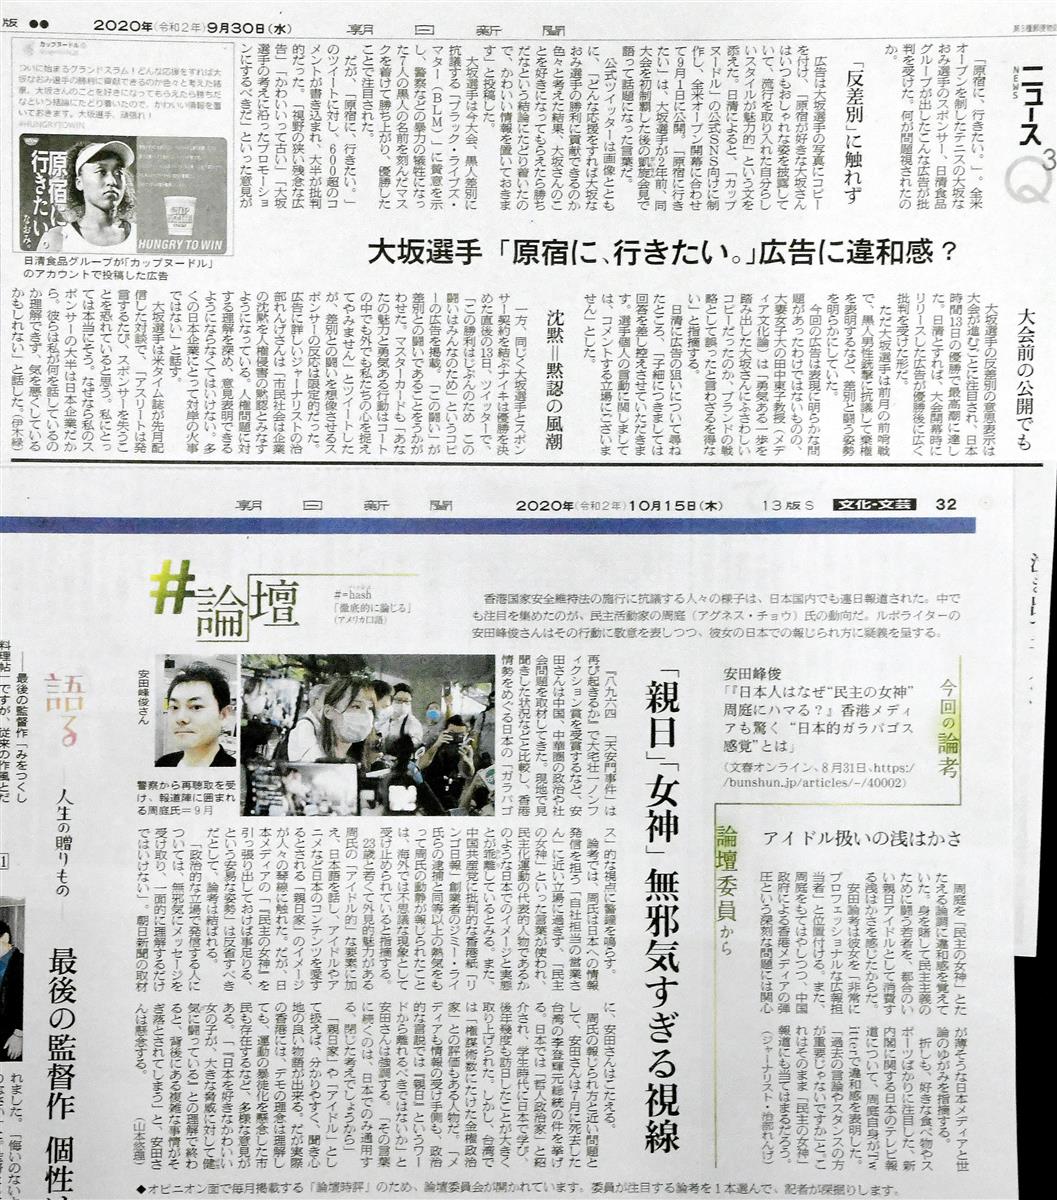 朝日新聞の大坂なおみ選手と周庭氏への姿勢 中国に対する遠慮 忖度も 1 3ページ イザ